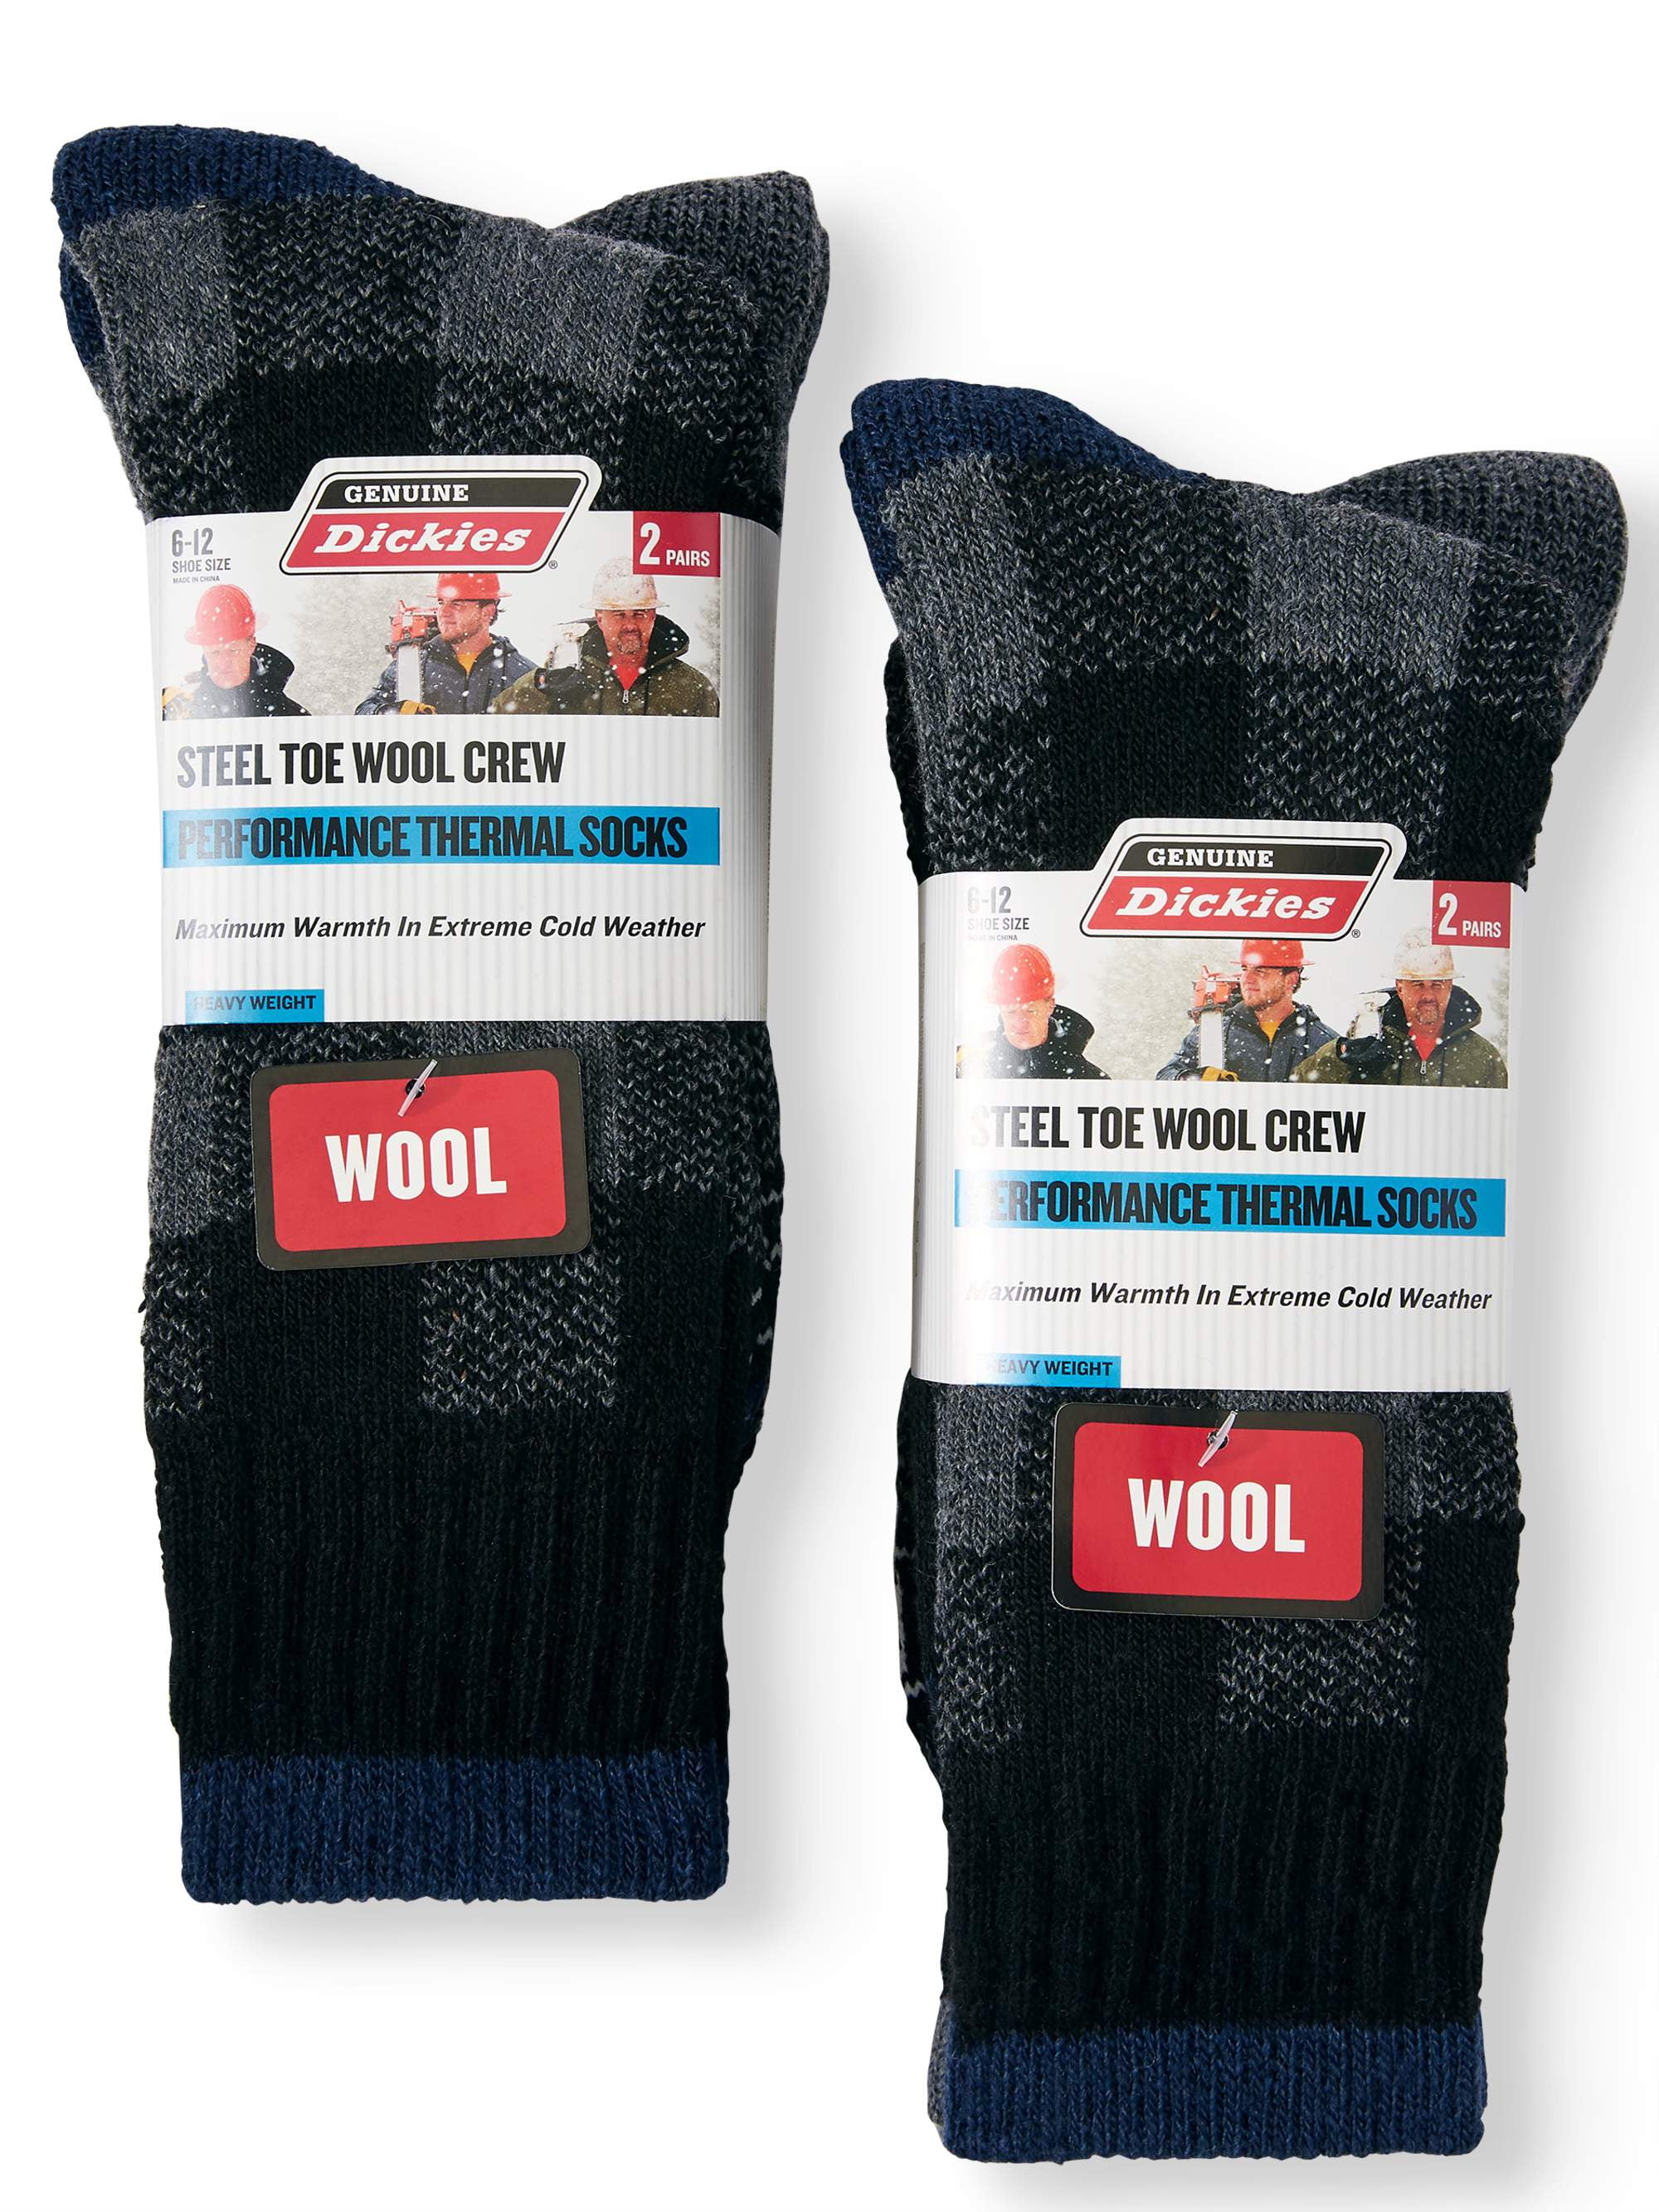 Dickies Women's Wool Blend Thermal Red Black Gray Plaid Socks 2 Pair Size 6-9